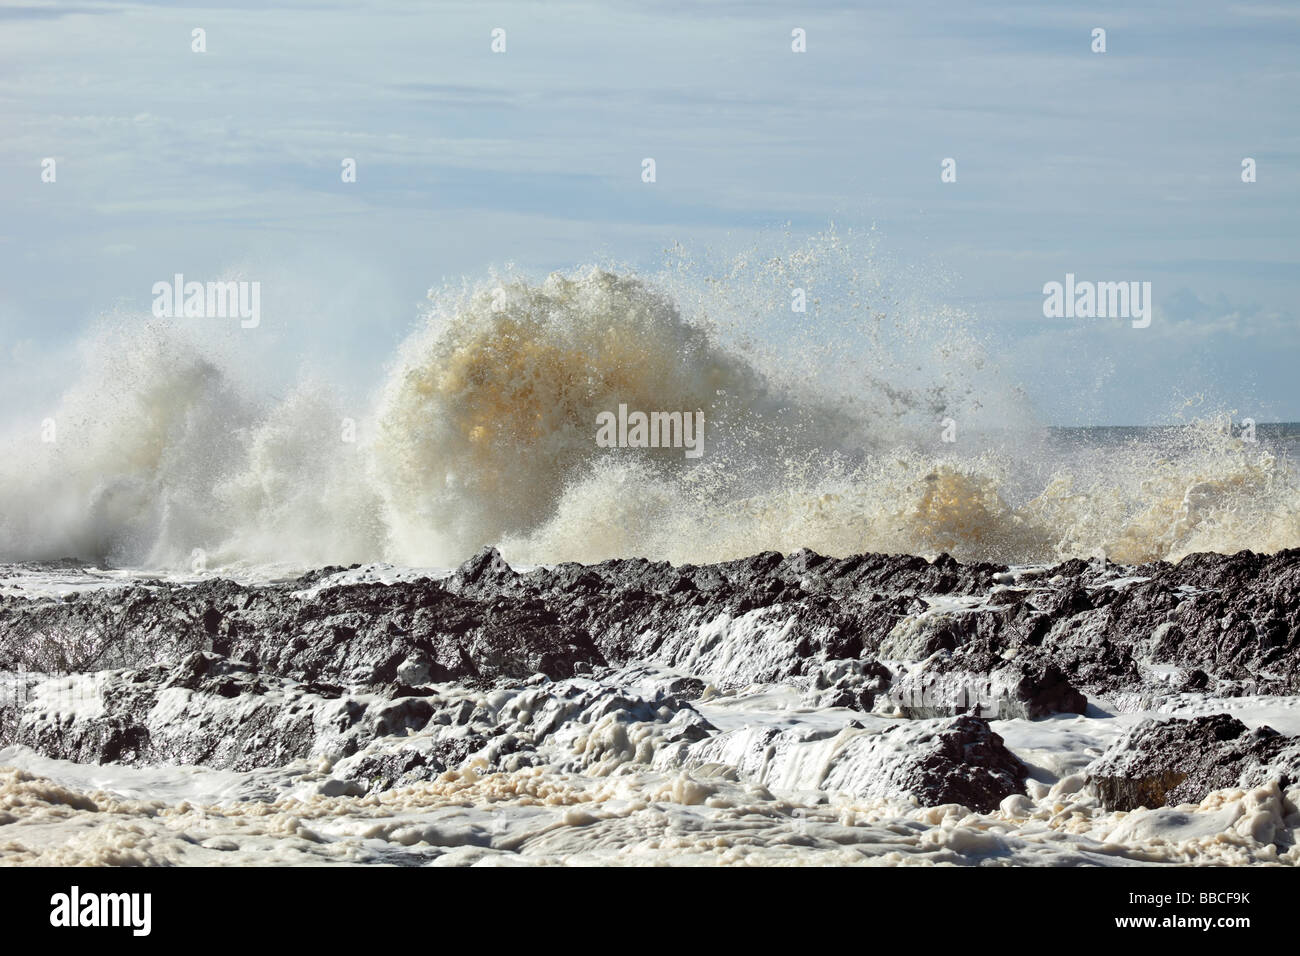 Pounding onde dopo una tempesta davanti dove l'oceano è stata montata in una schiuma Foto Stock